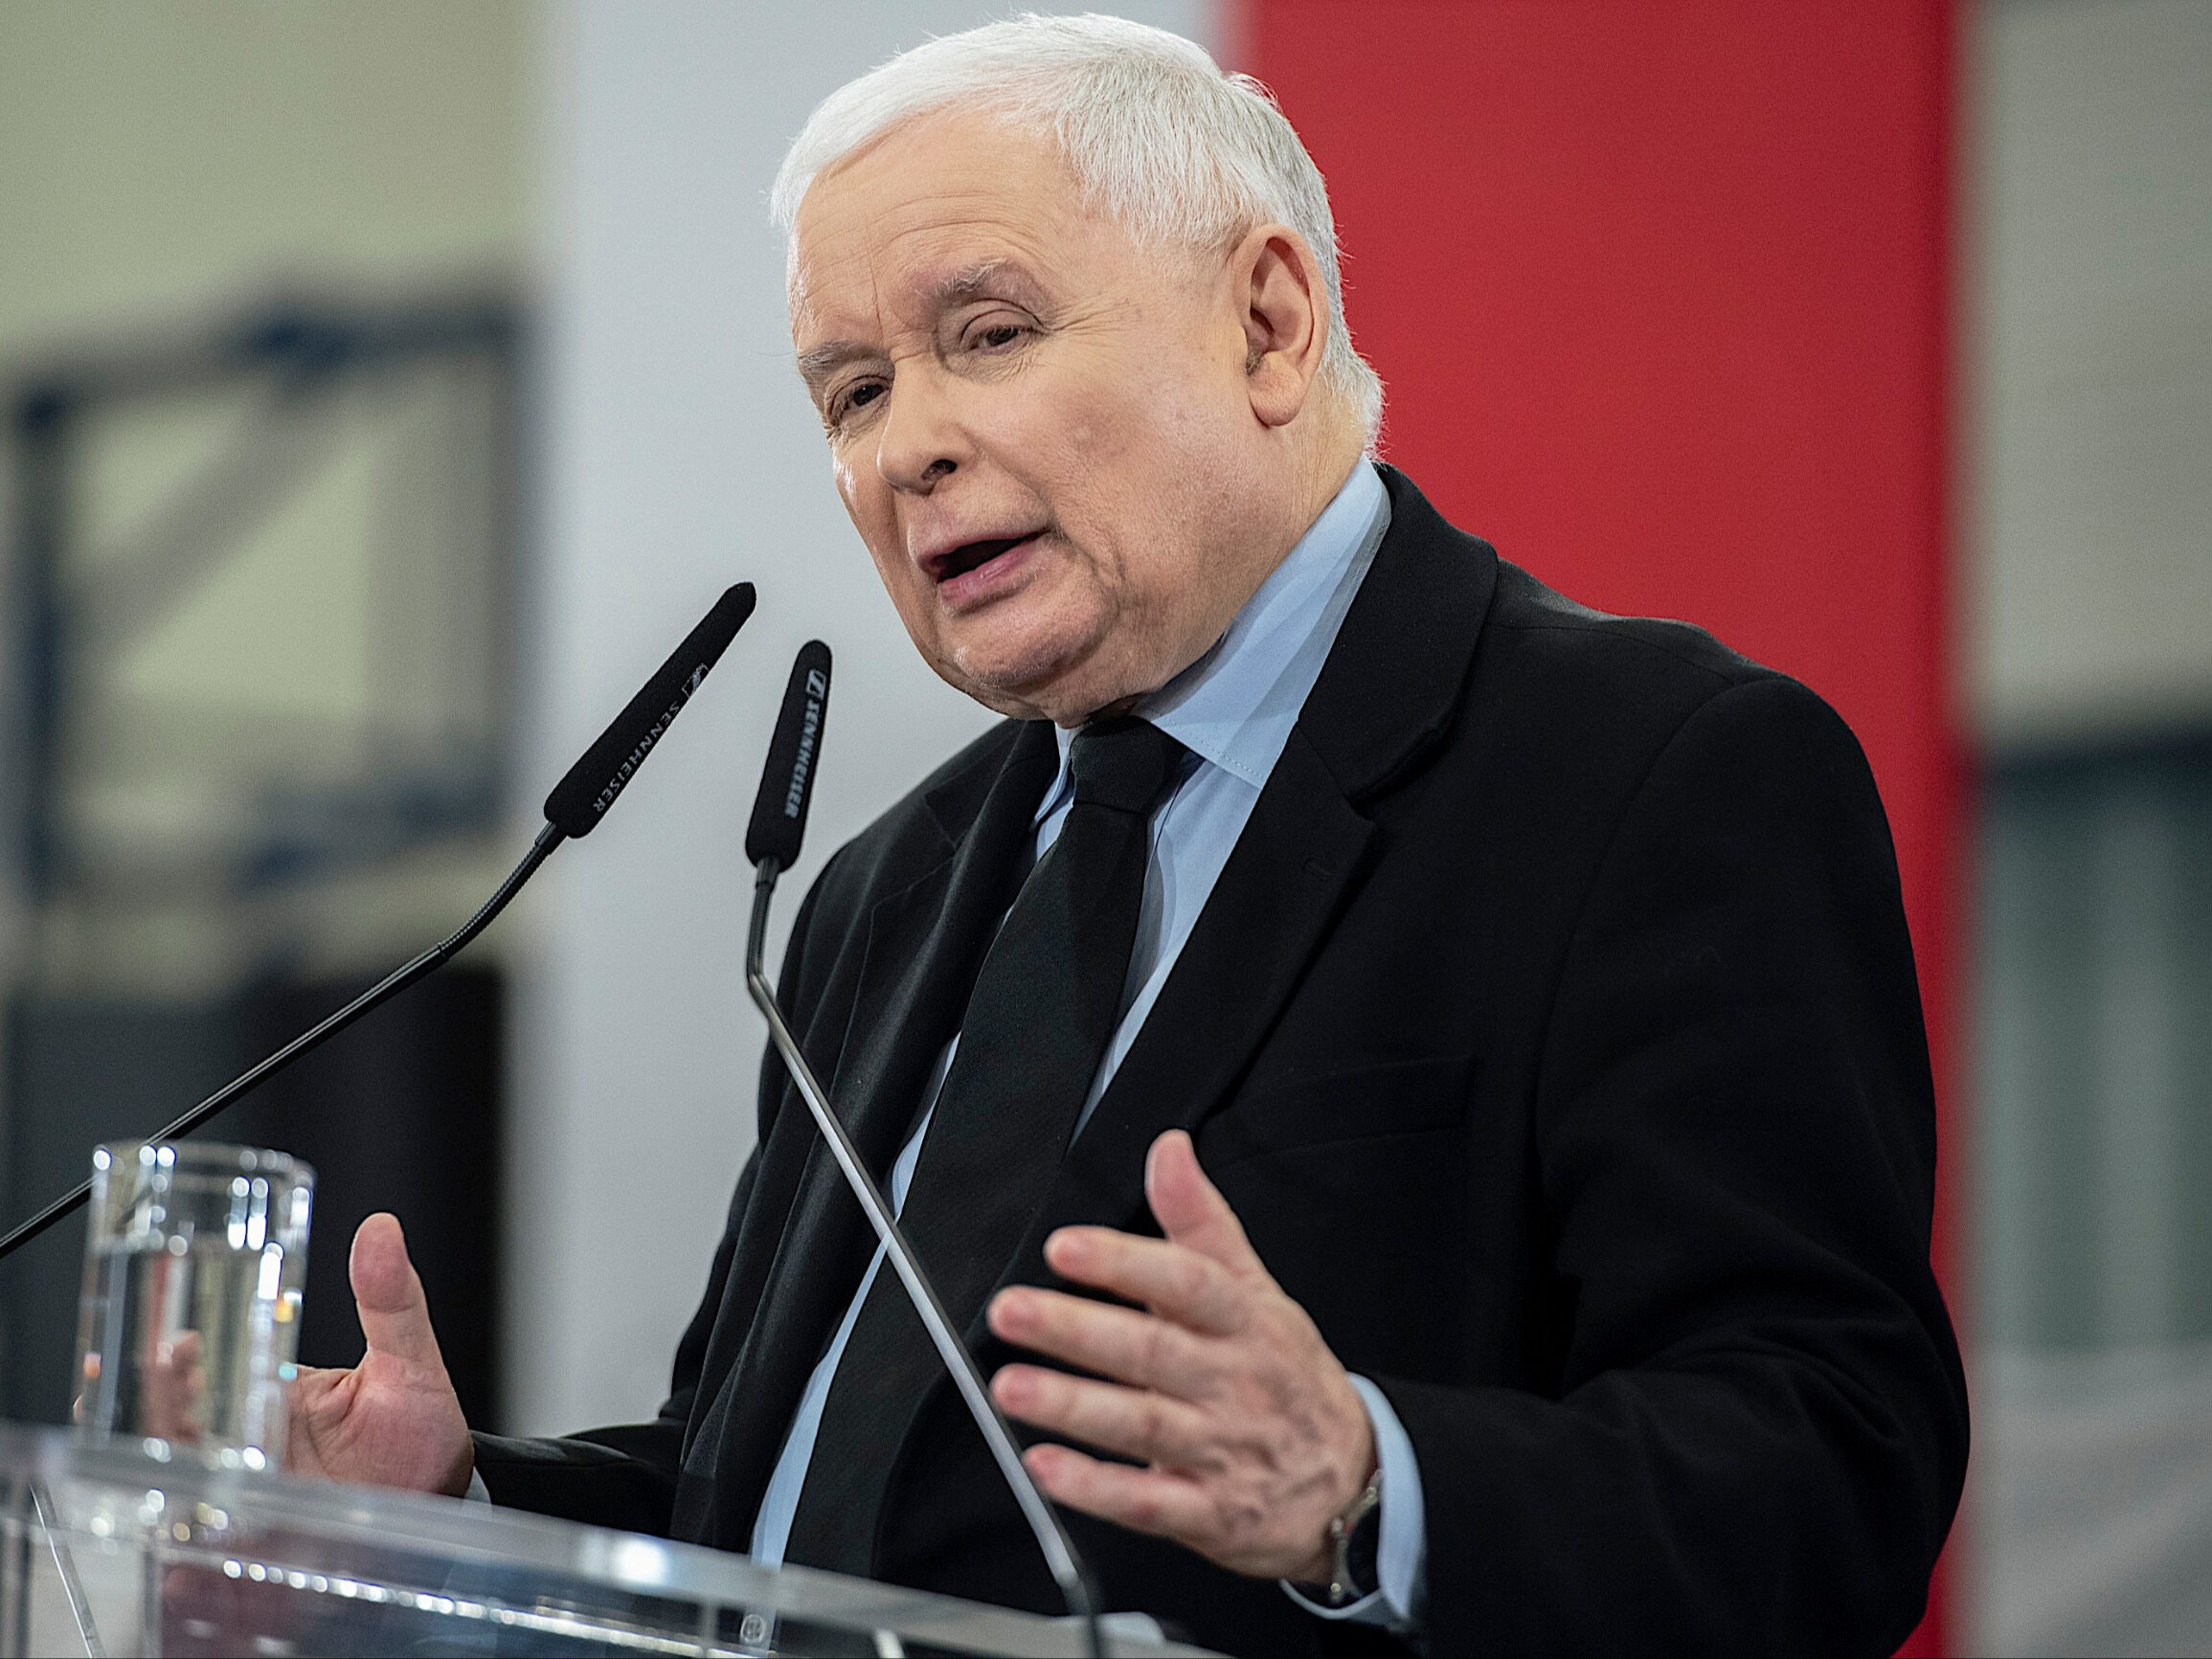 dziennikarz przegrał proces z jarosławem kaczyńskim. poszło o „geja”